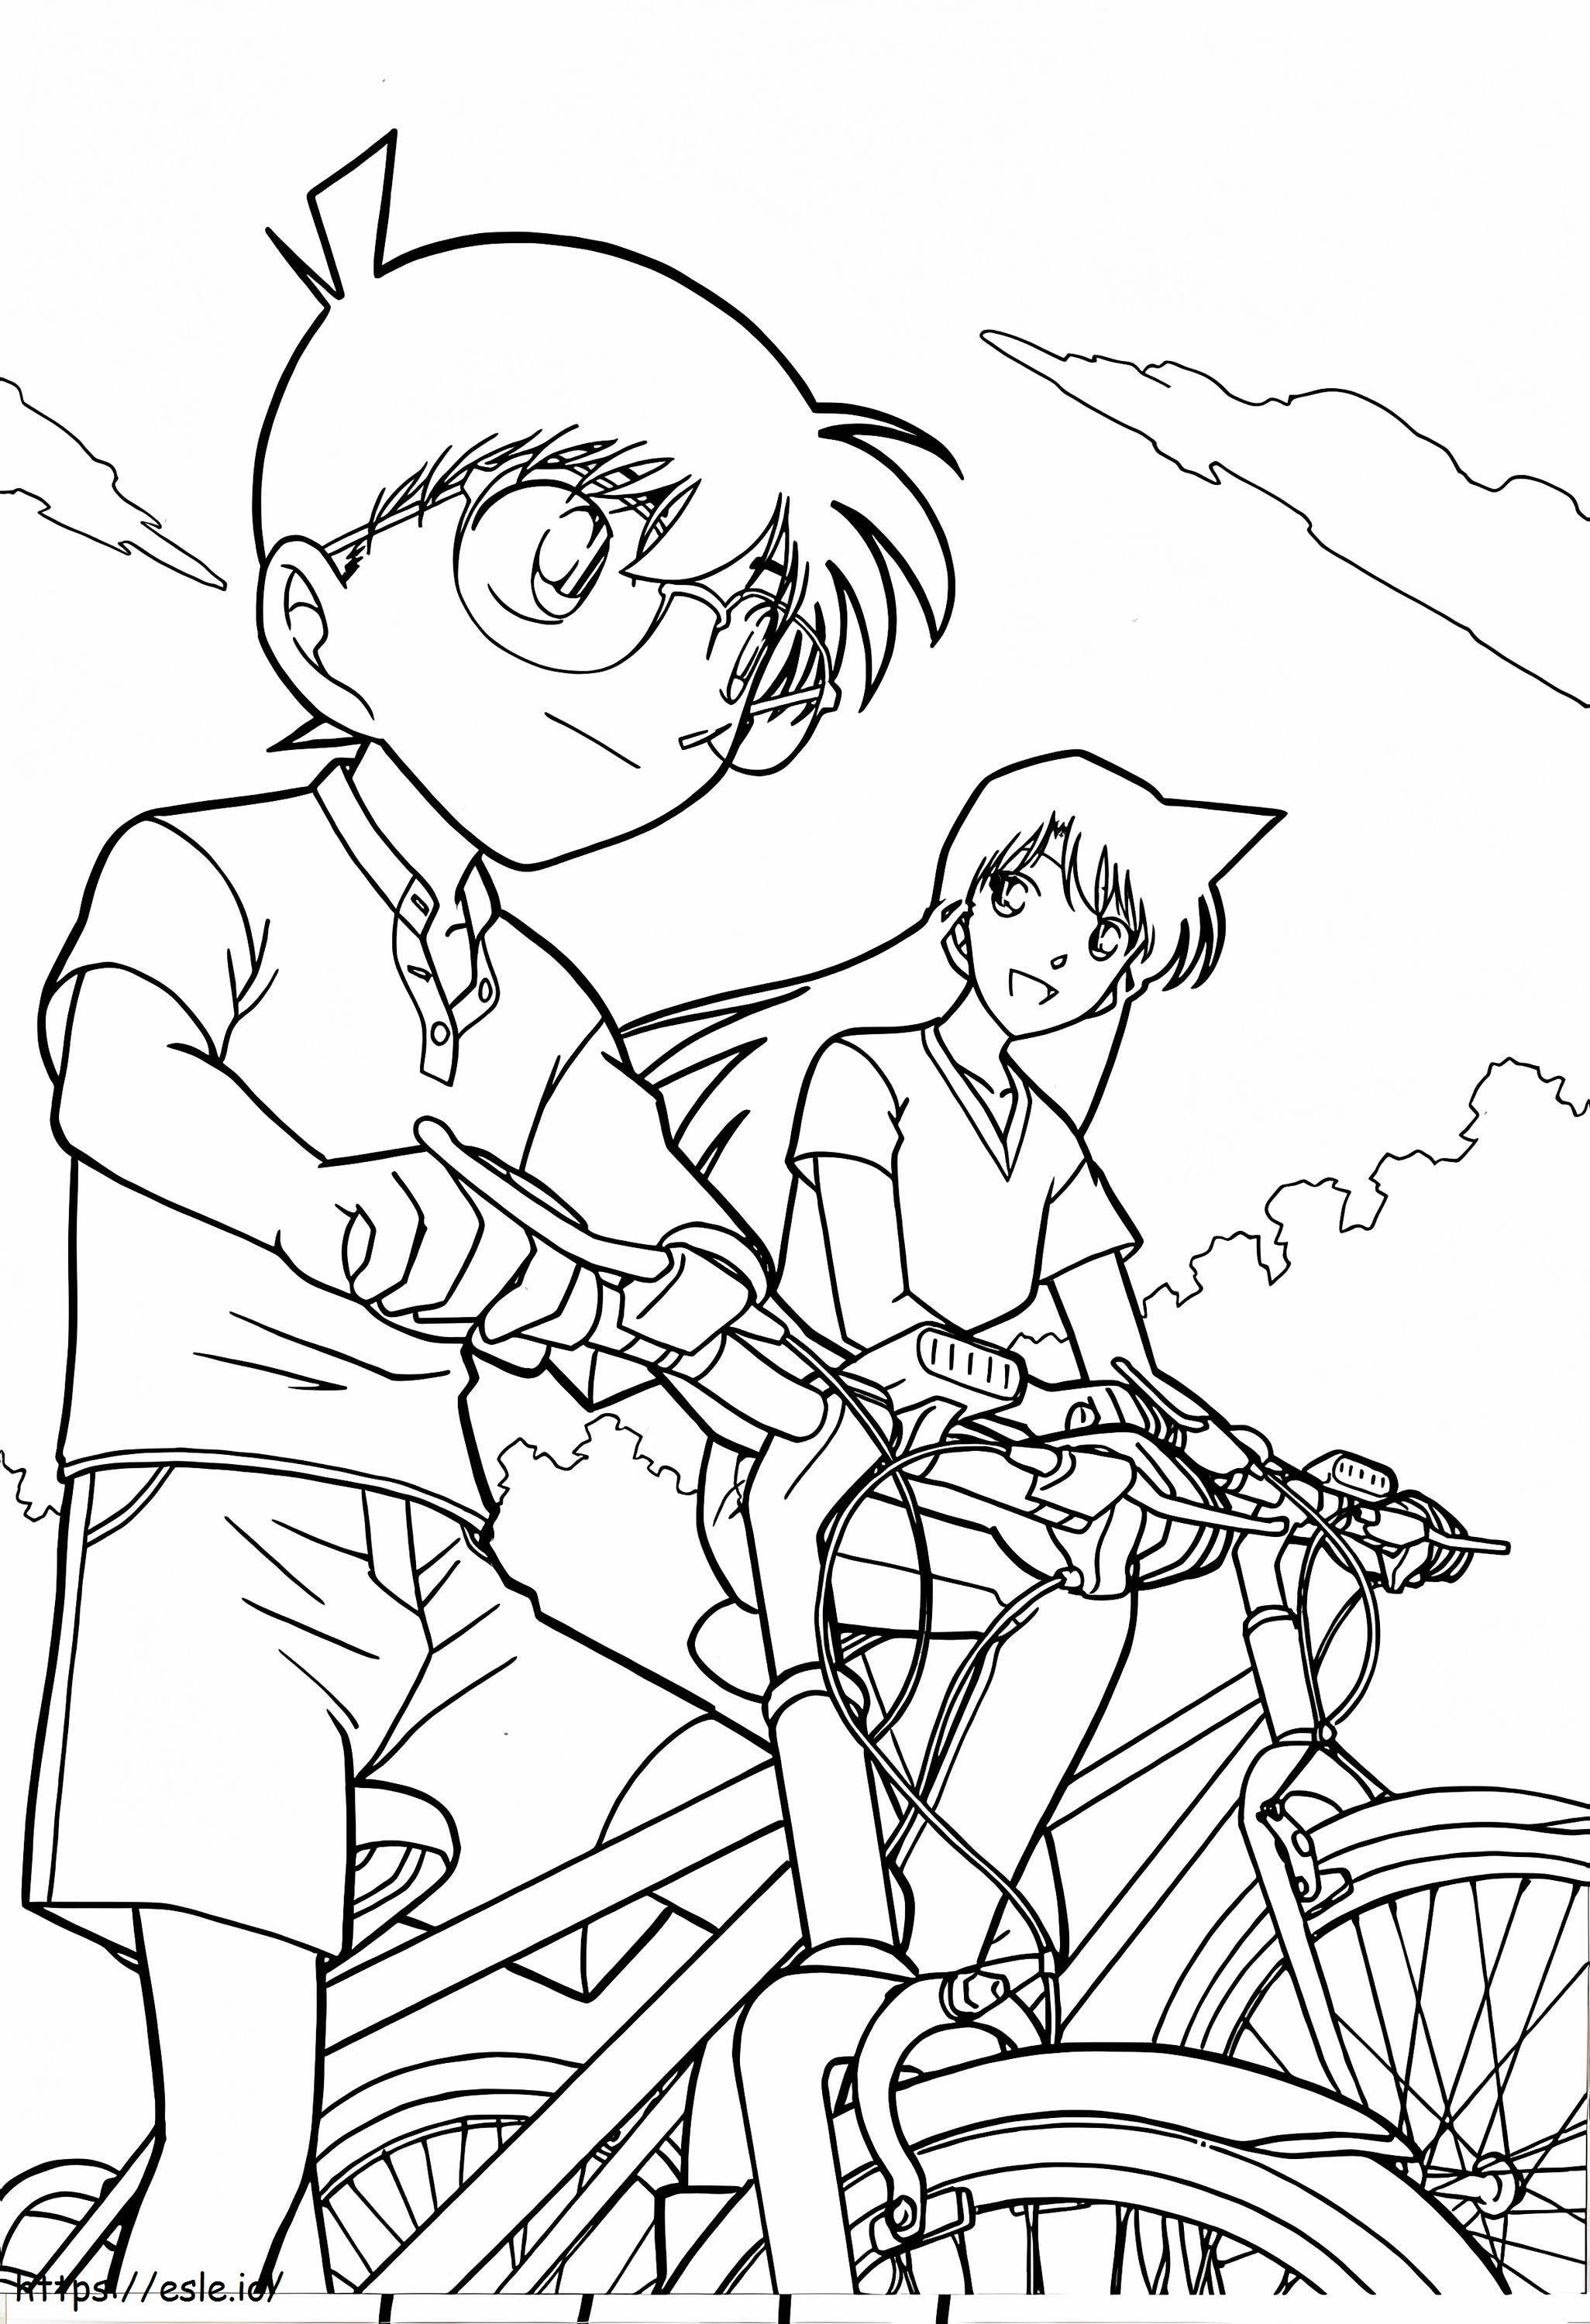 Coloriage Conan et a couru sur un vélo à imprimer dessin